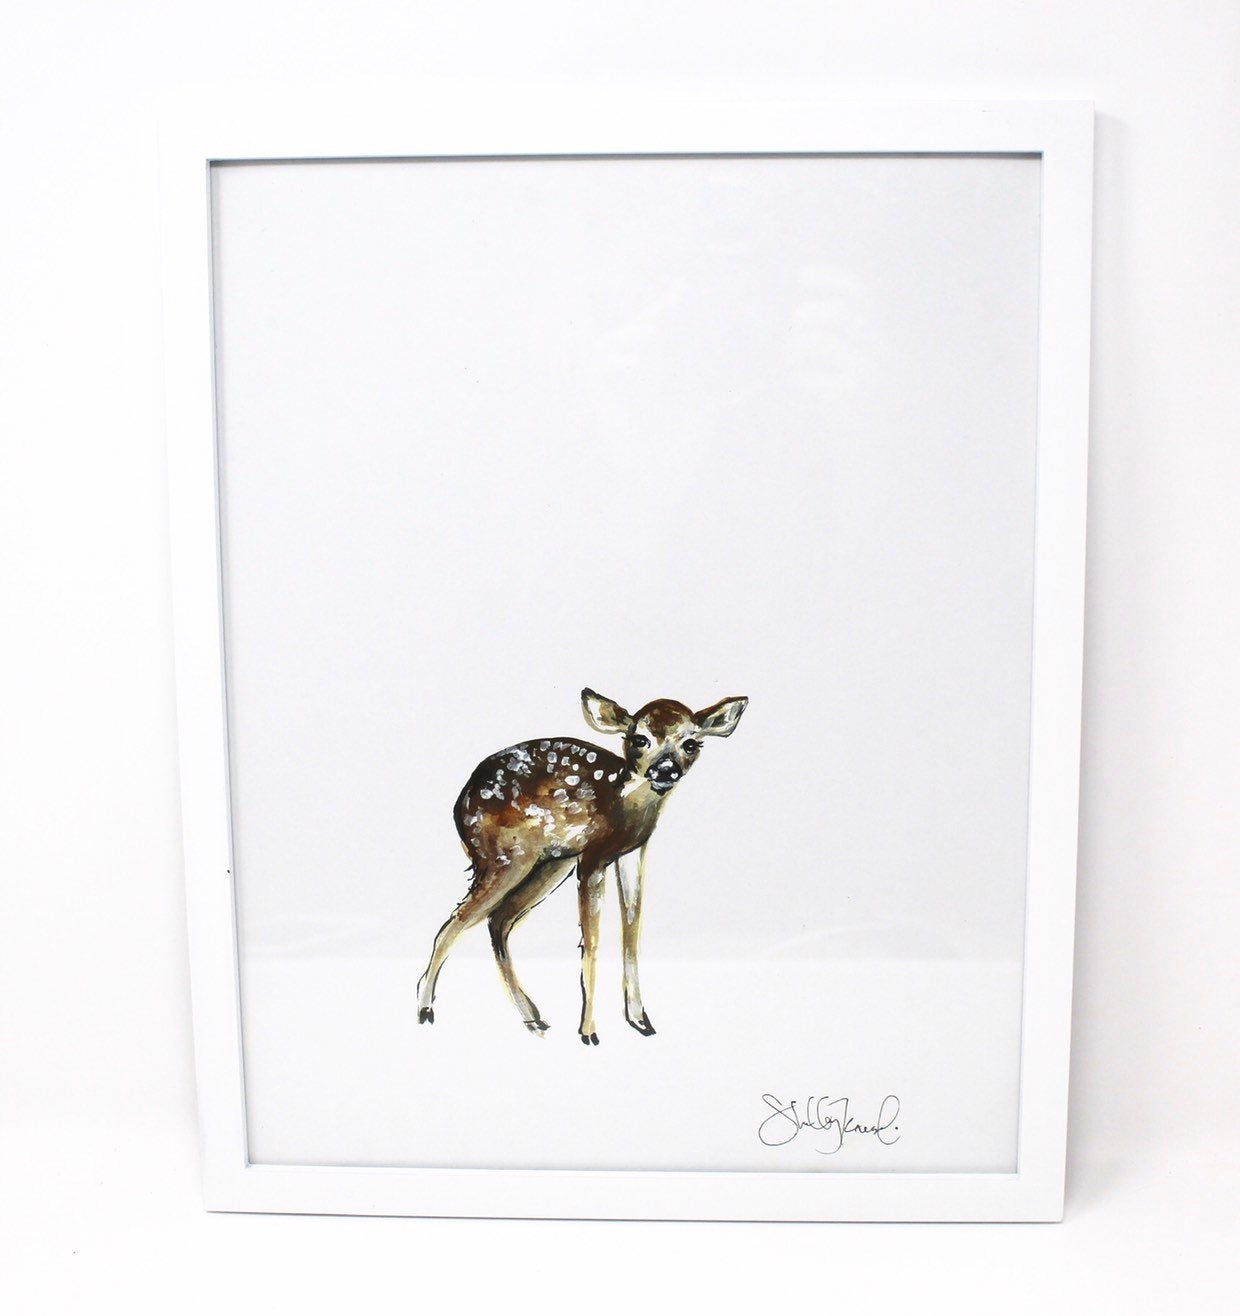 Baby Deer Print